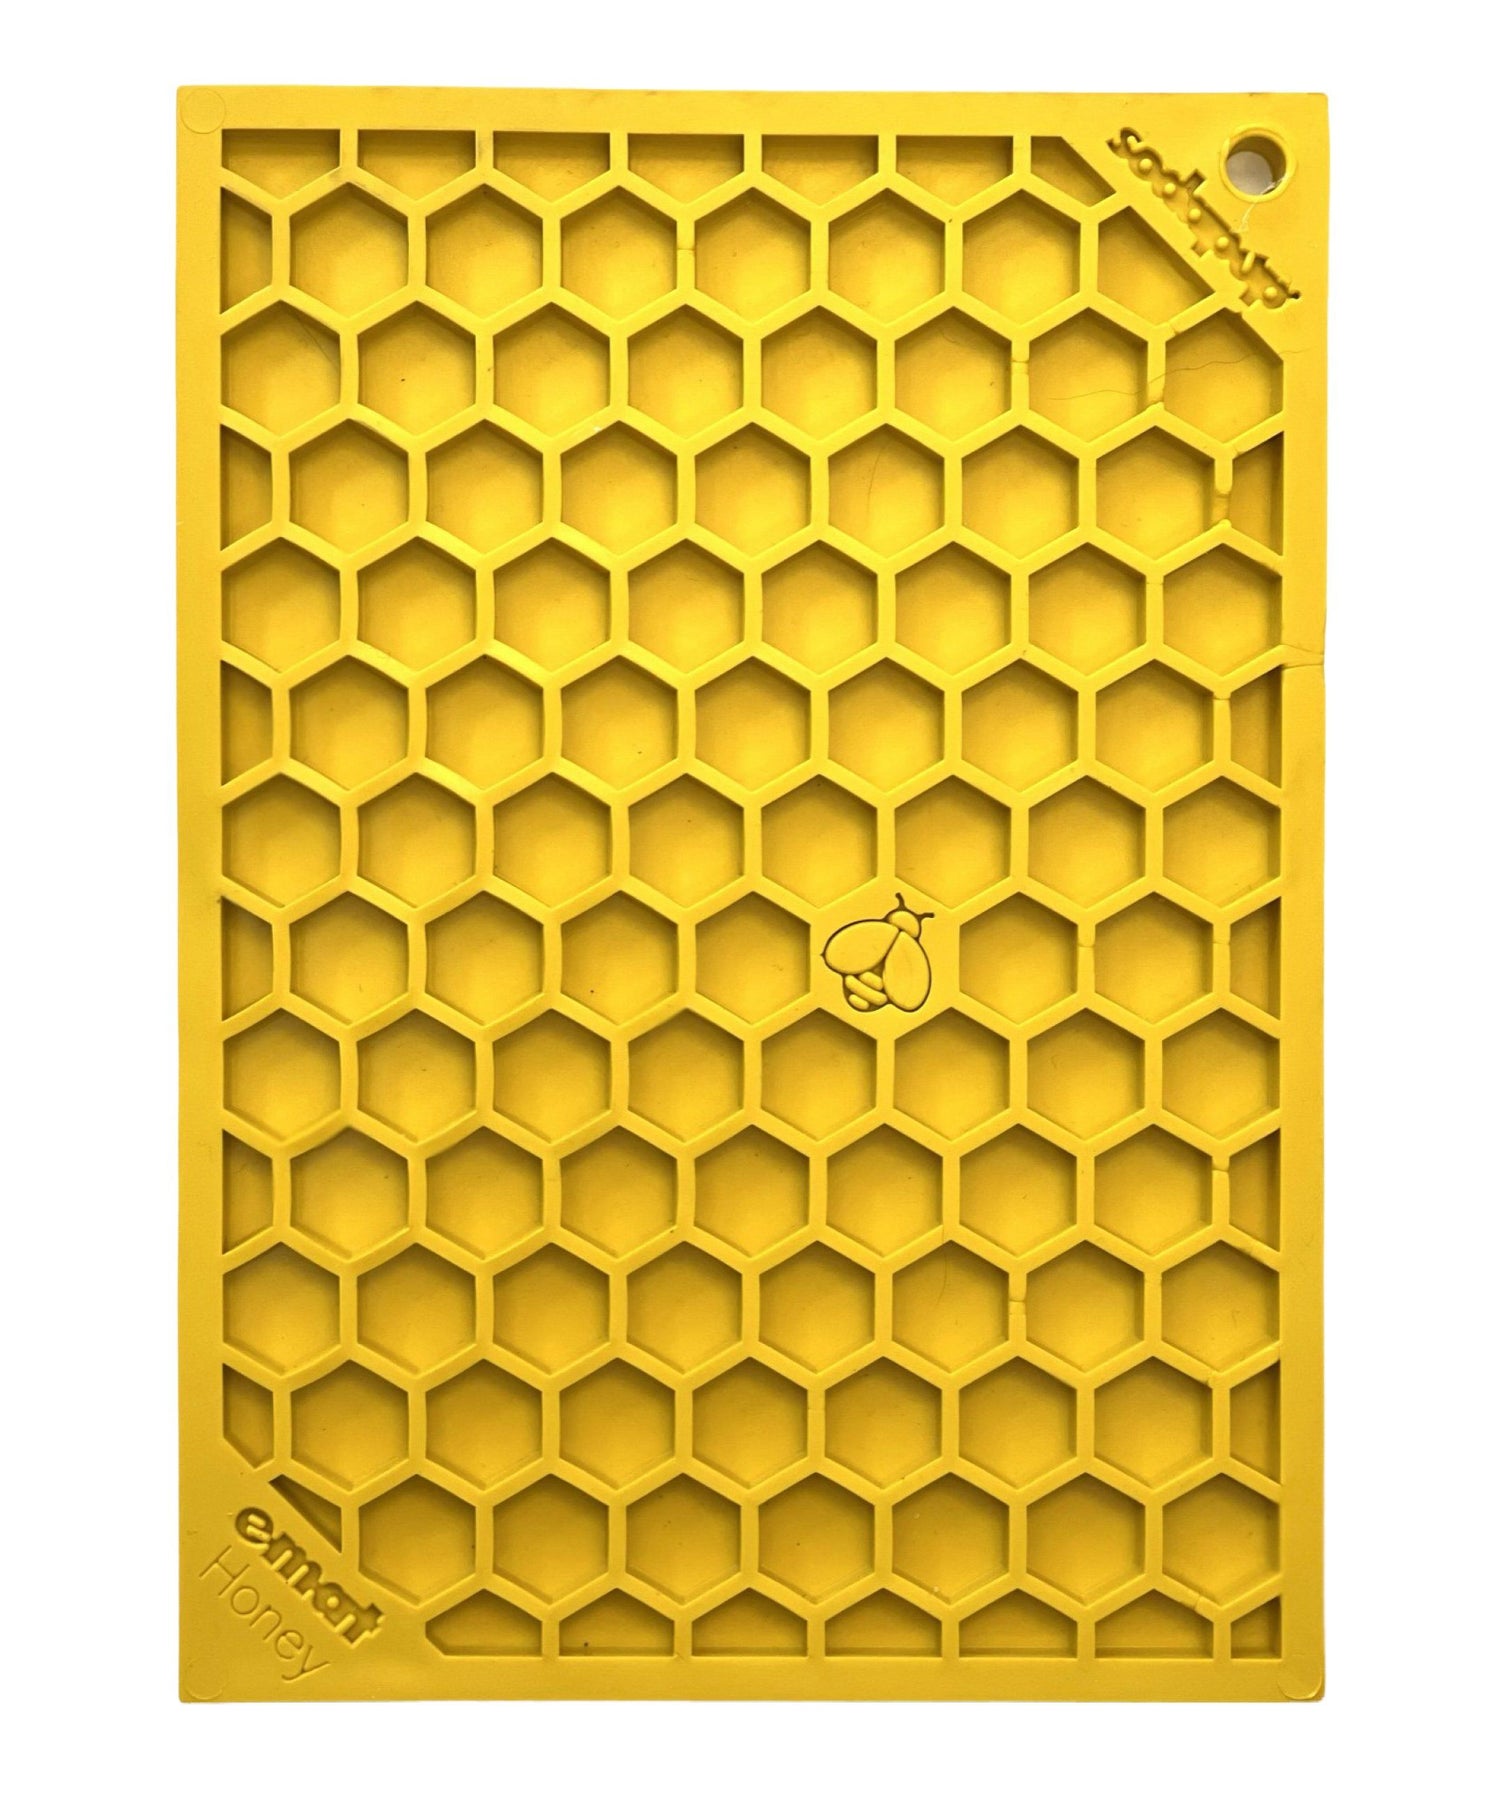 SodaPup Flower Power & Honeycomb eMat Bundle ? Durable Enrichment